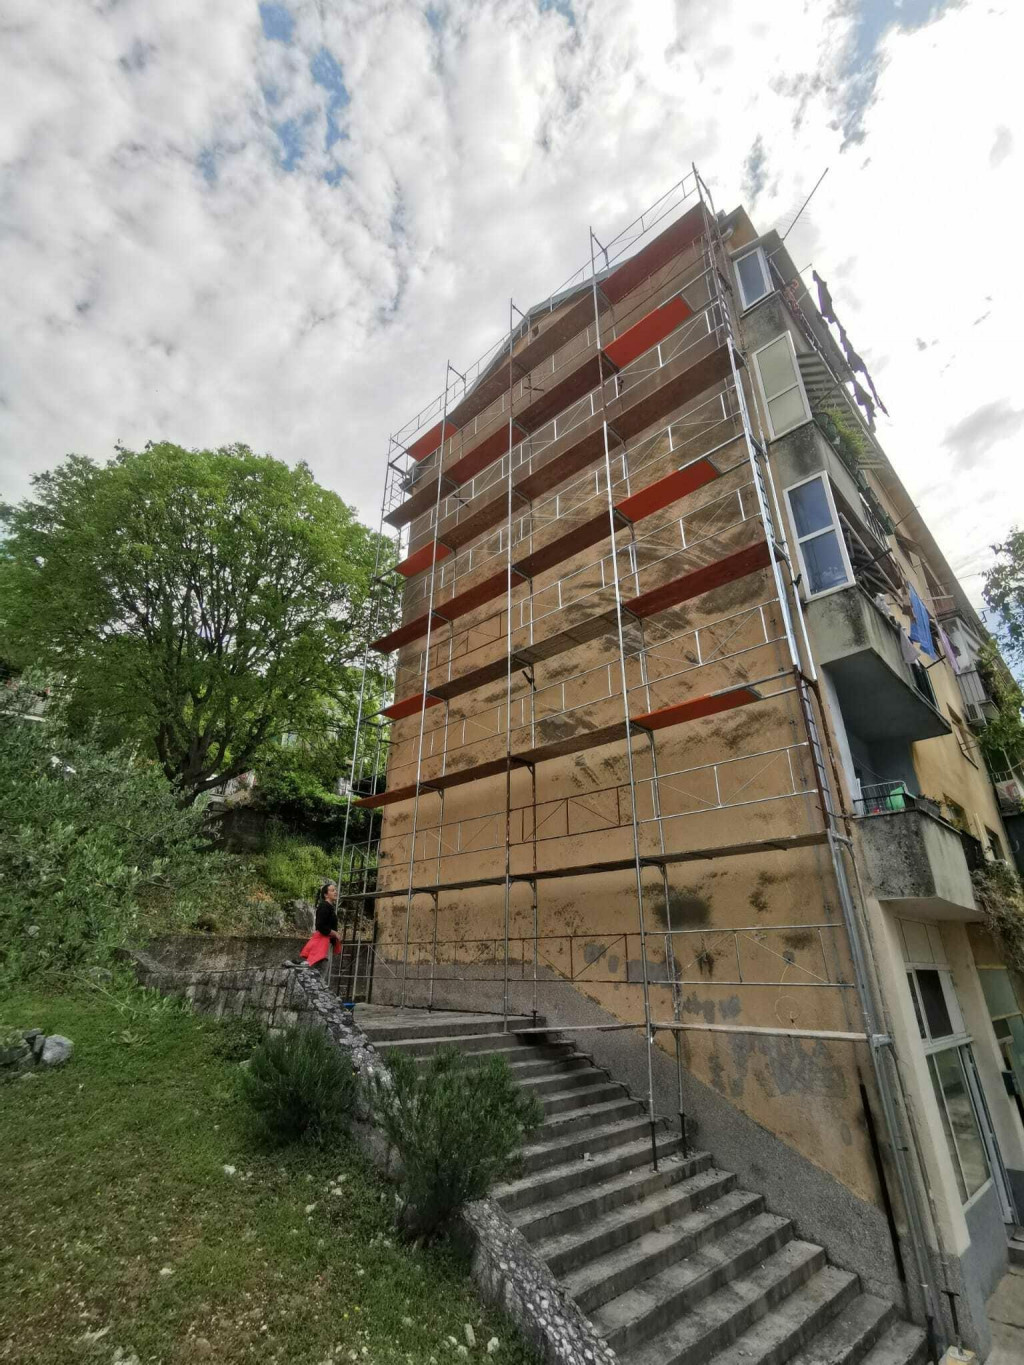 &lt;p&gt;fasada koja će uskoro biti podloga golemom muralu Tee Jurišić&lt;/p&gt;